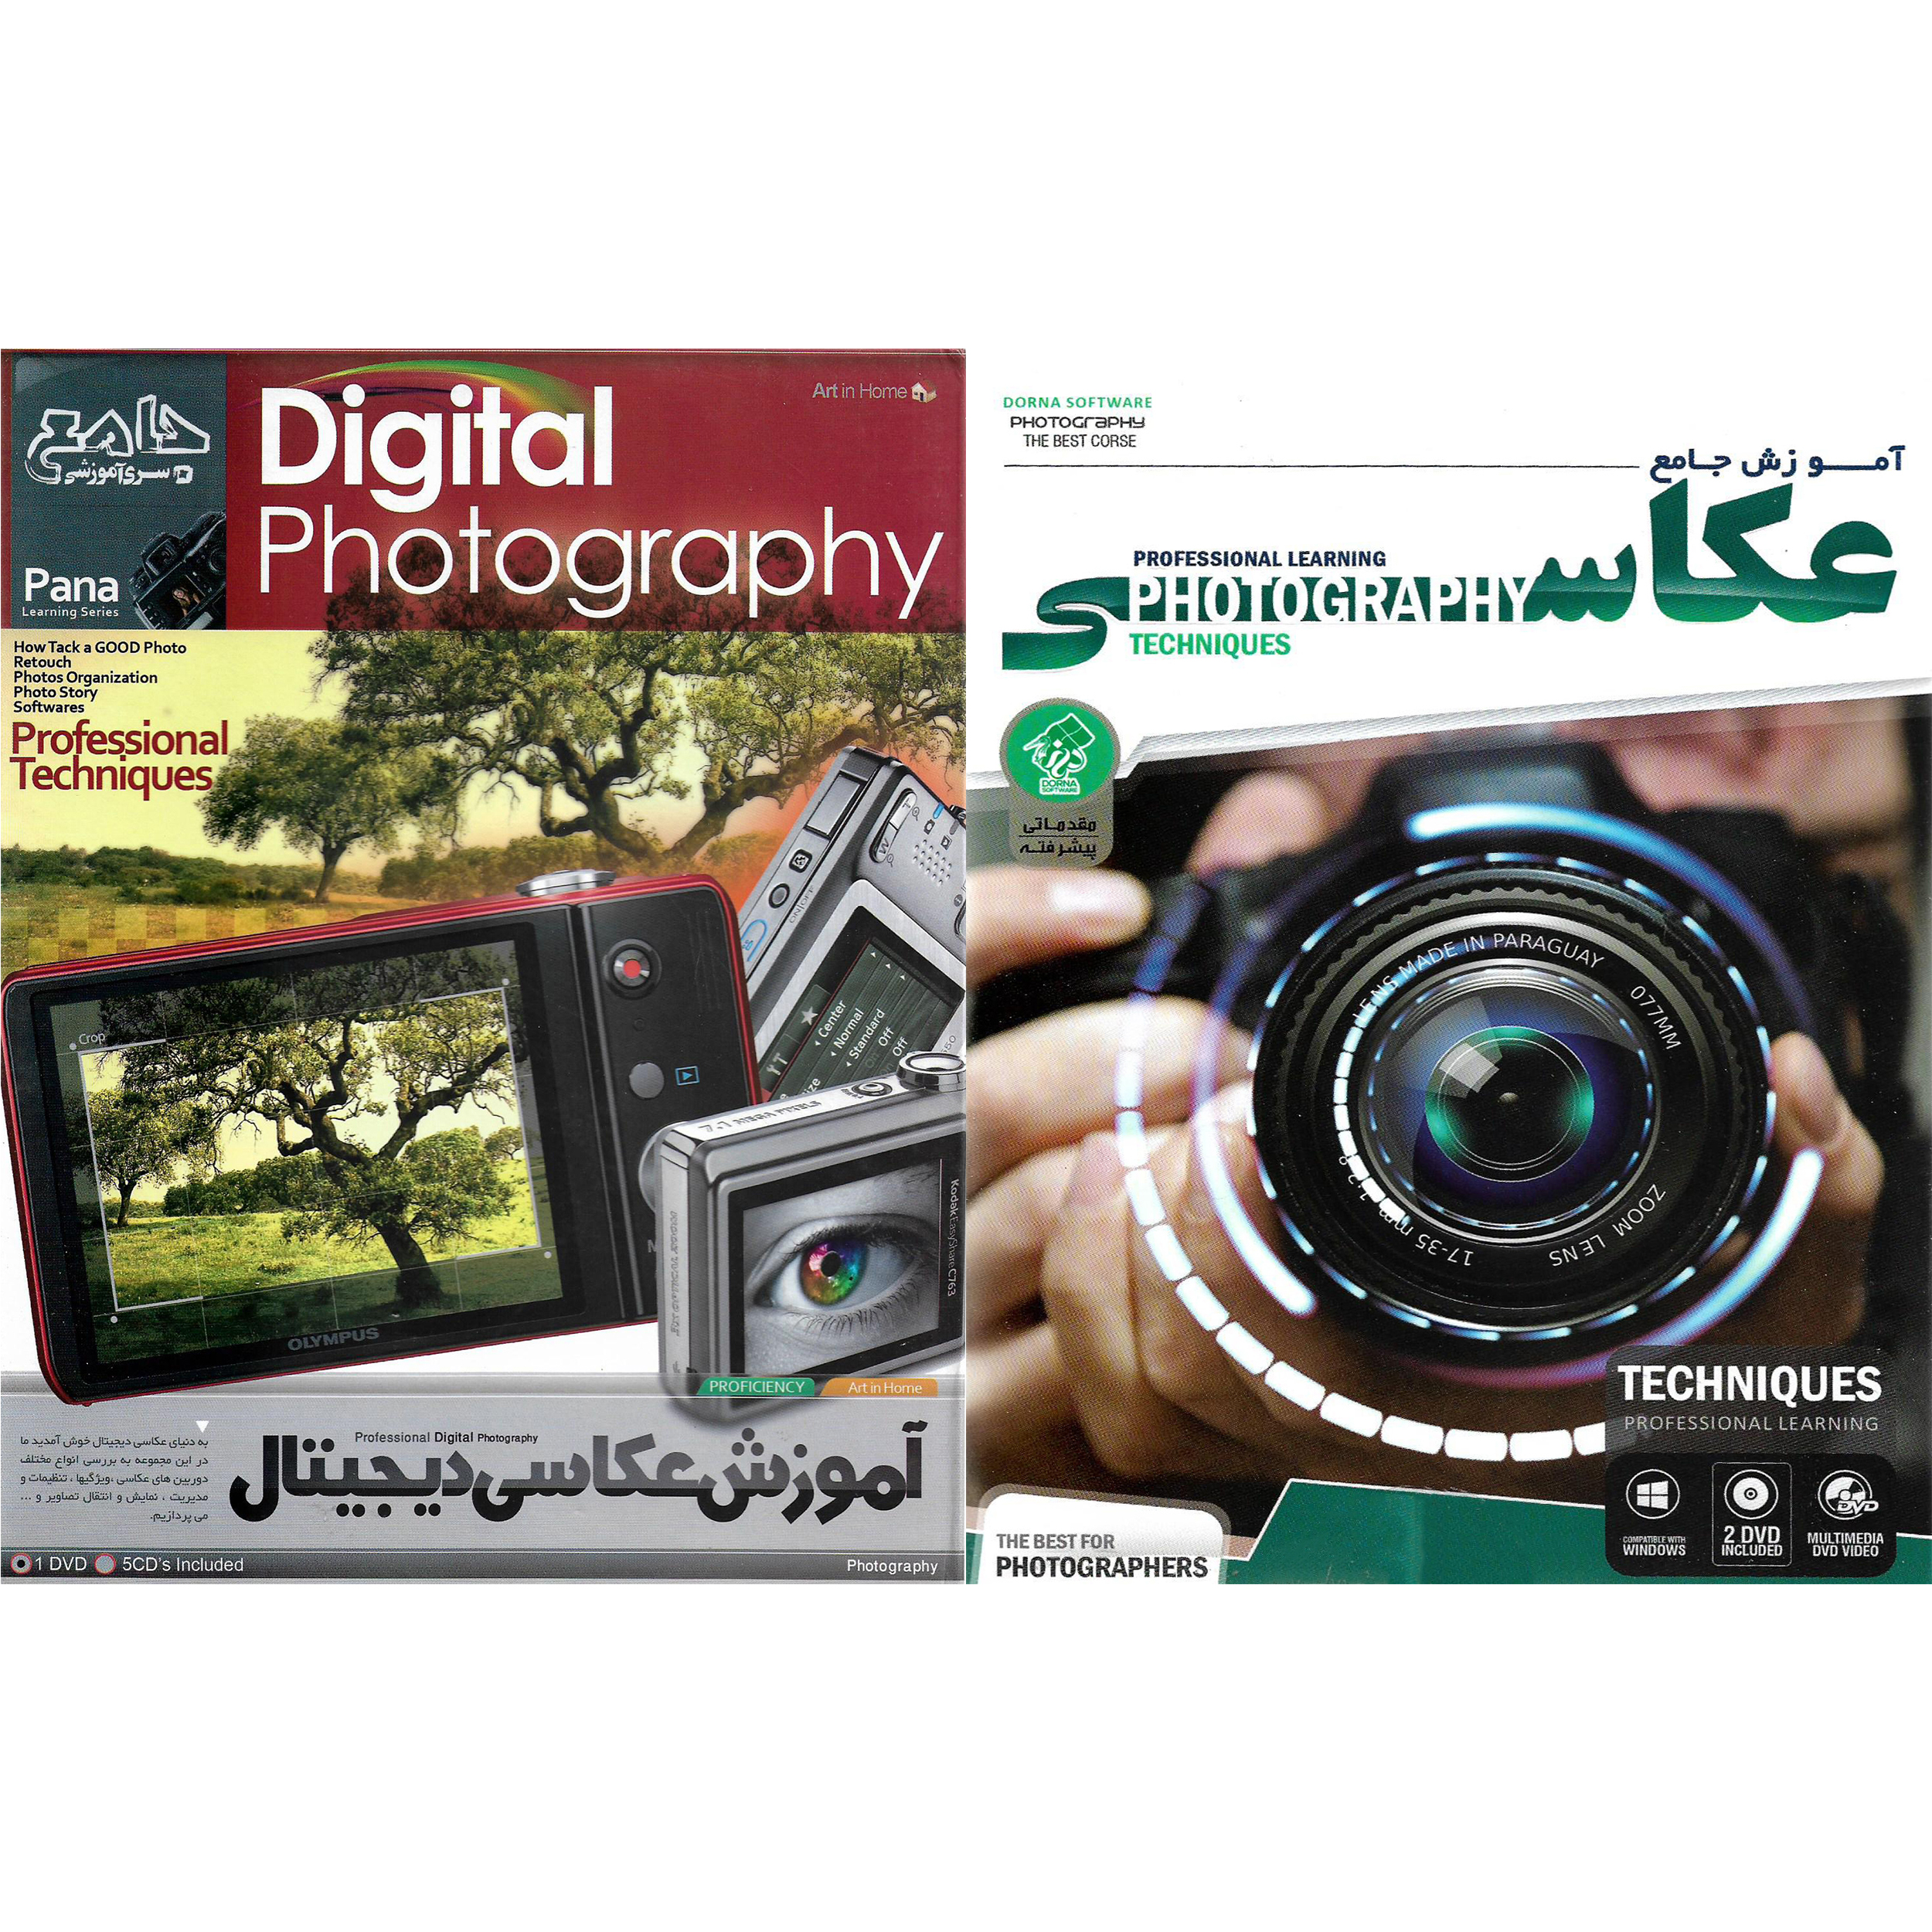 نرم افزار آموزش جامع عکاسی نشر درنا به همراه نرم افزار آموزش عکاسی دیجیتال نشر پانا